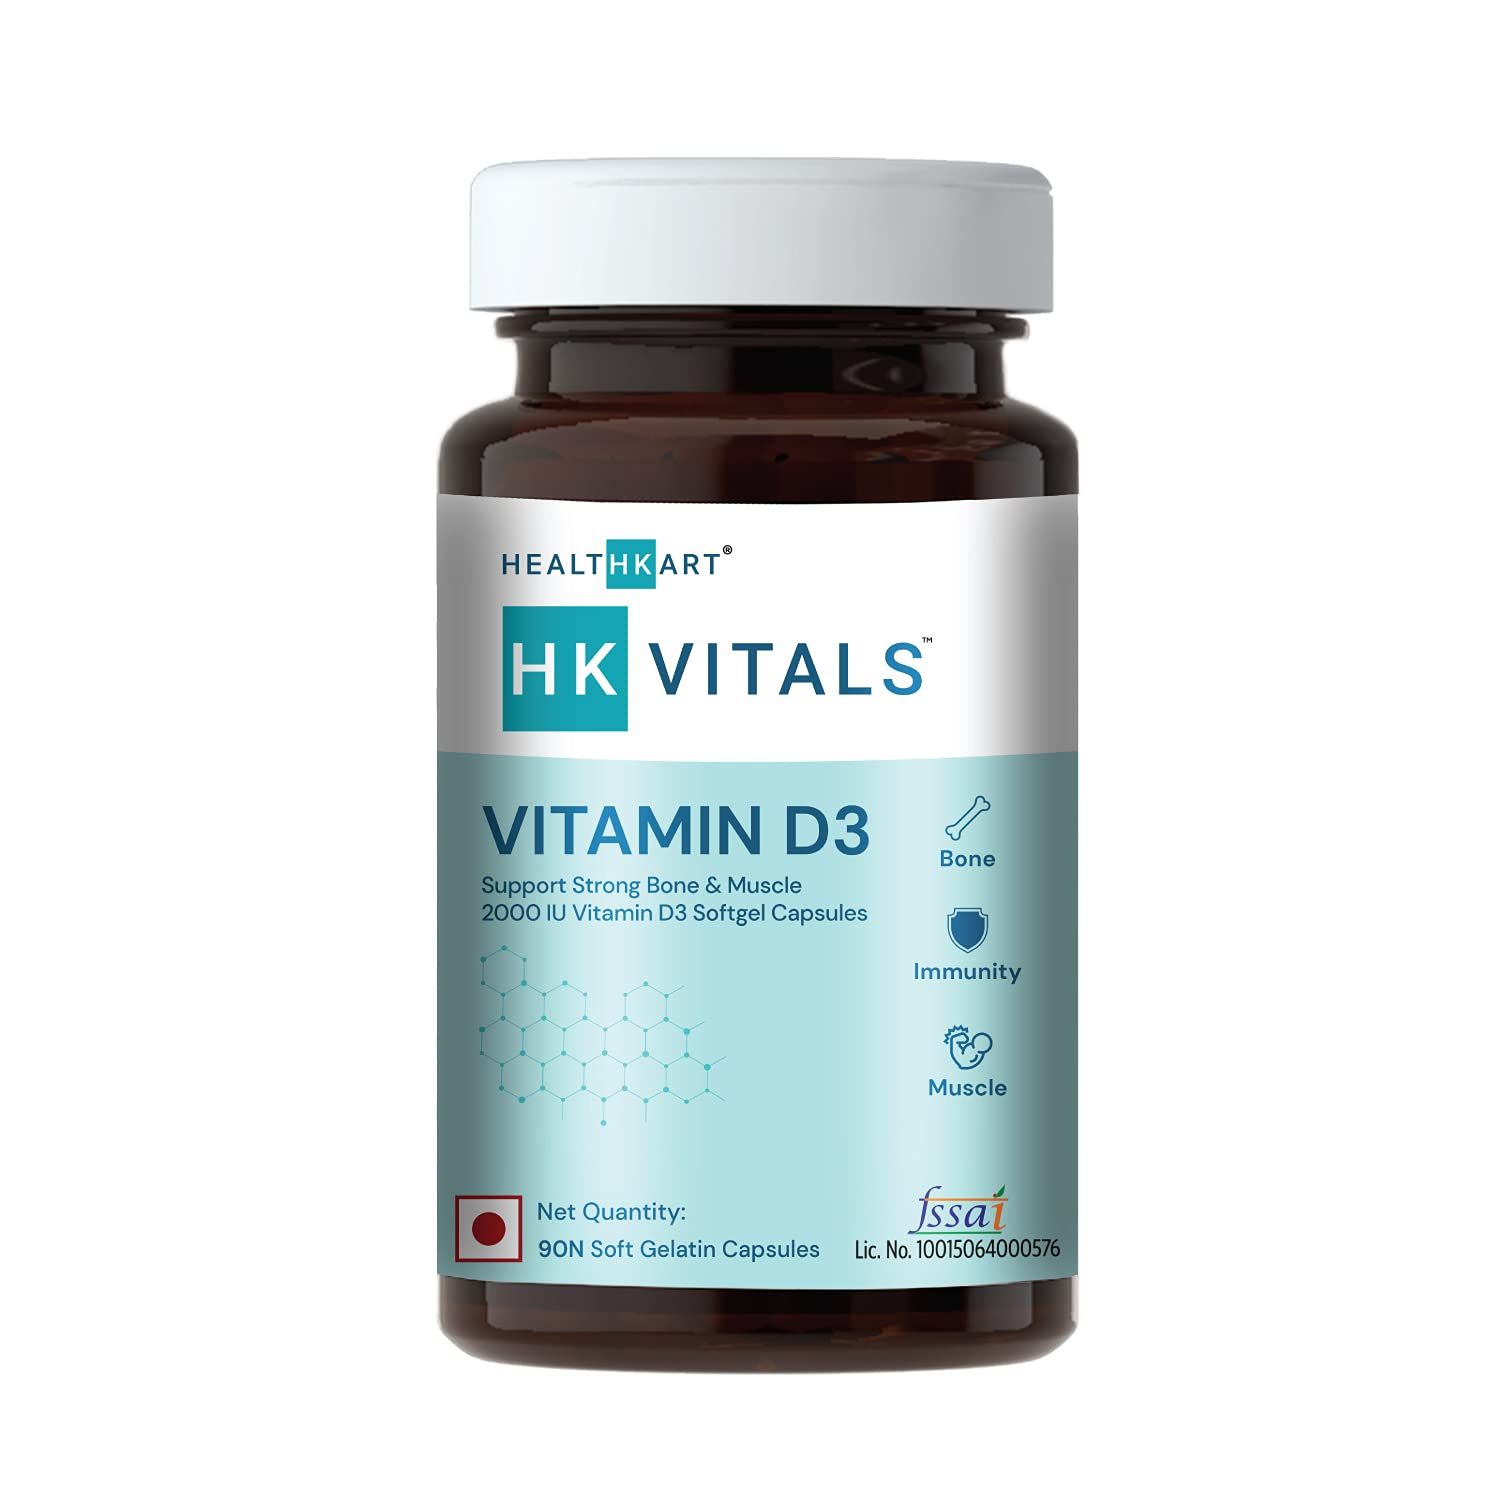 HK Vitals Vitamin D3 Image